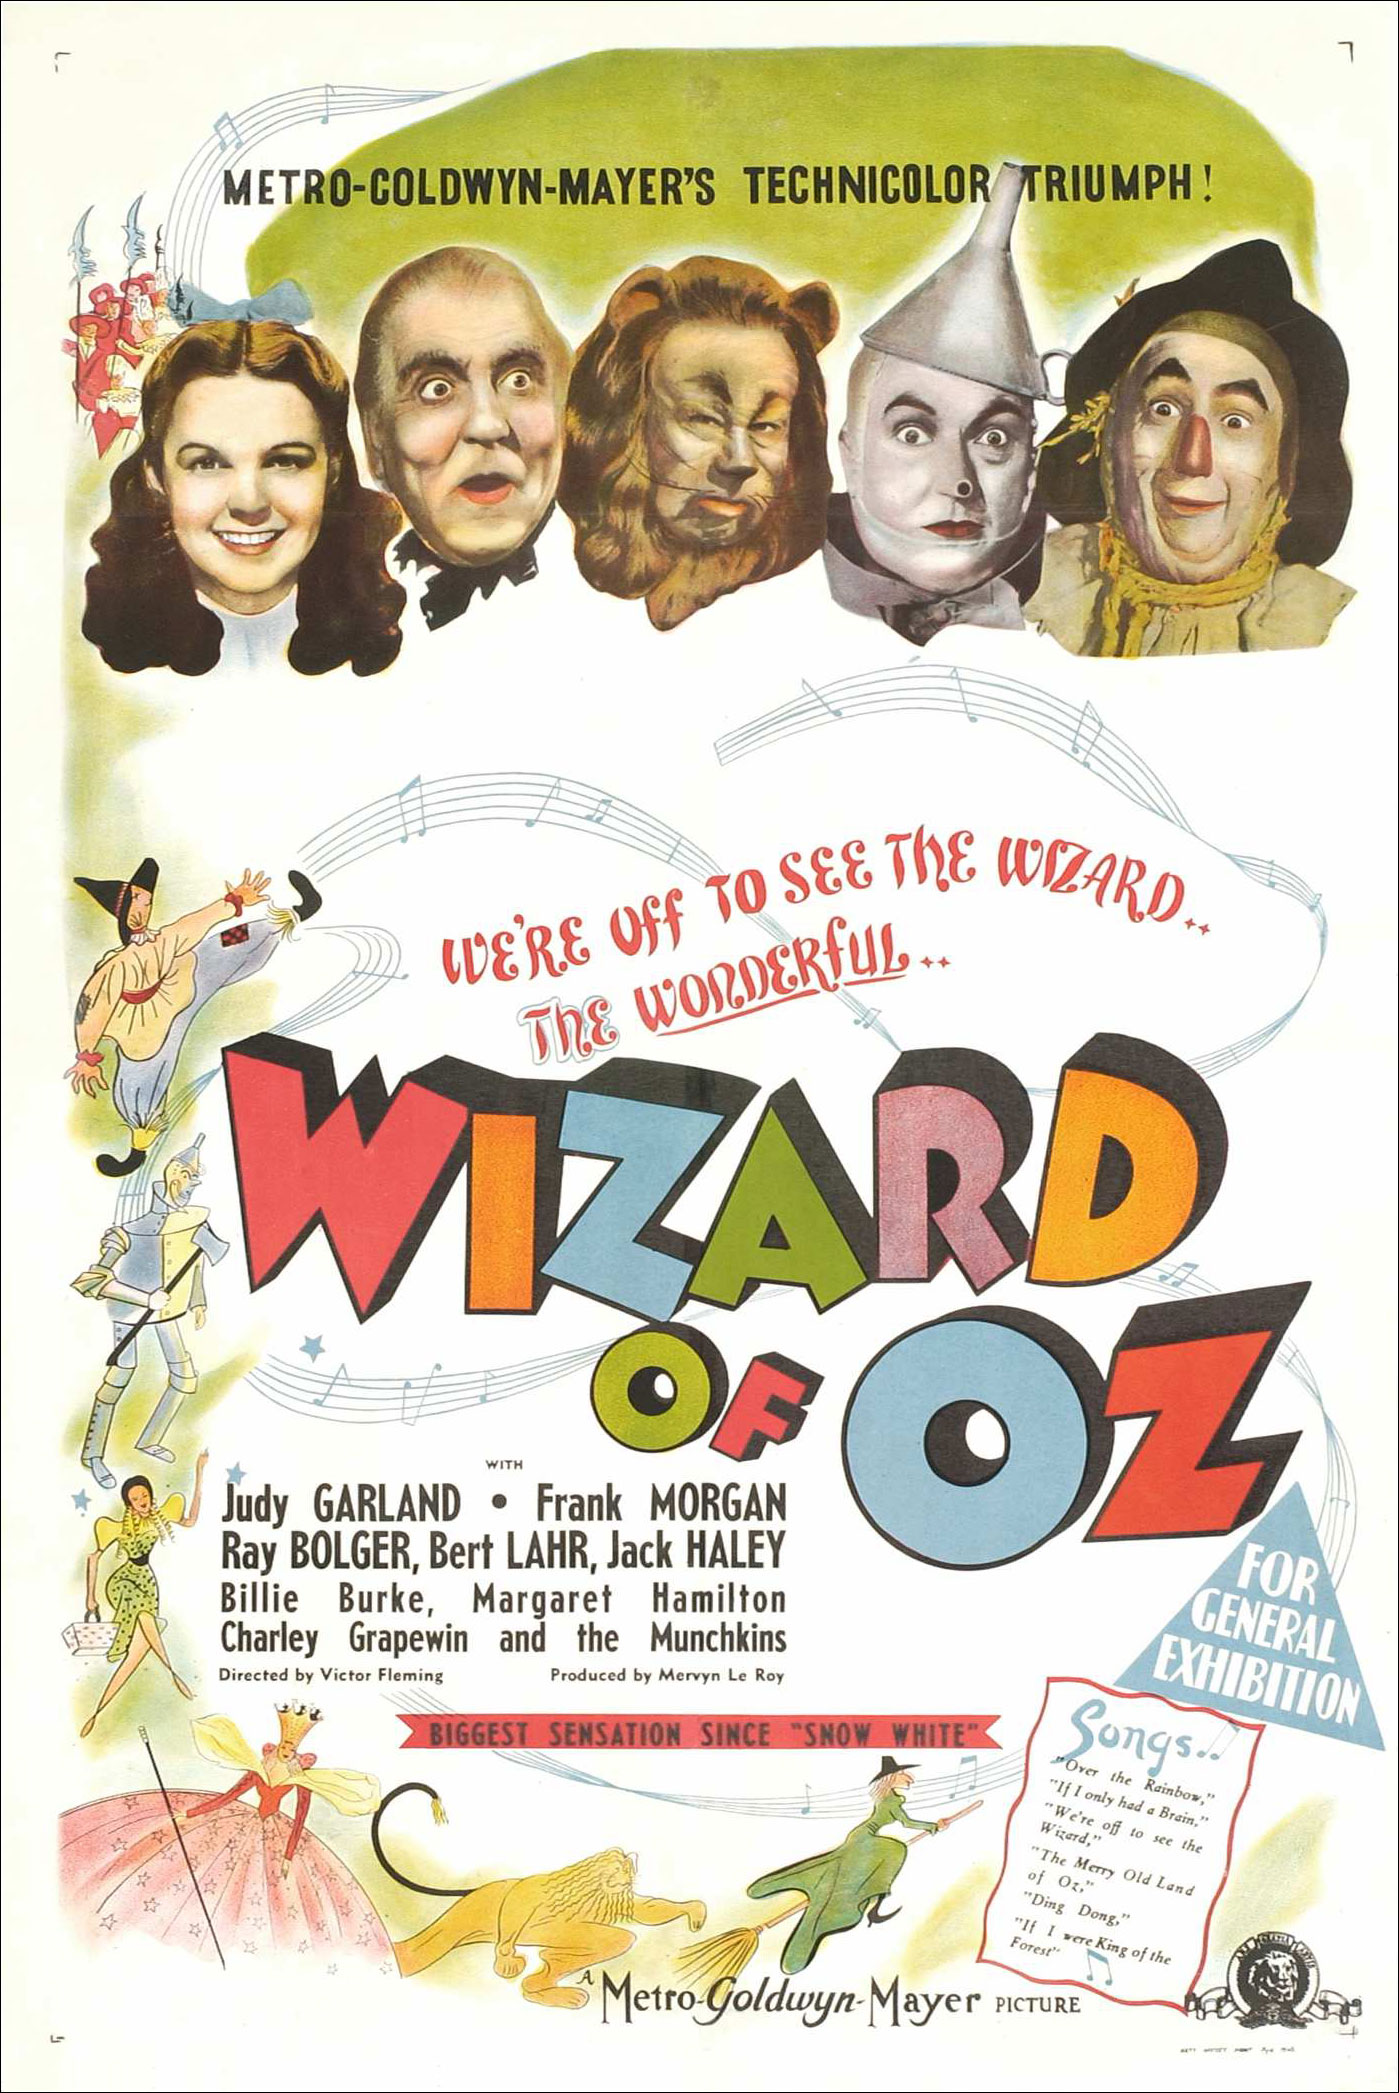 Stiahni si Filmy CZ/SK dabing Carodej ze zeme Oz / The Wizard of Oz (1939)(CZ) = CSFD 78%